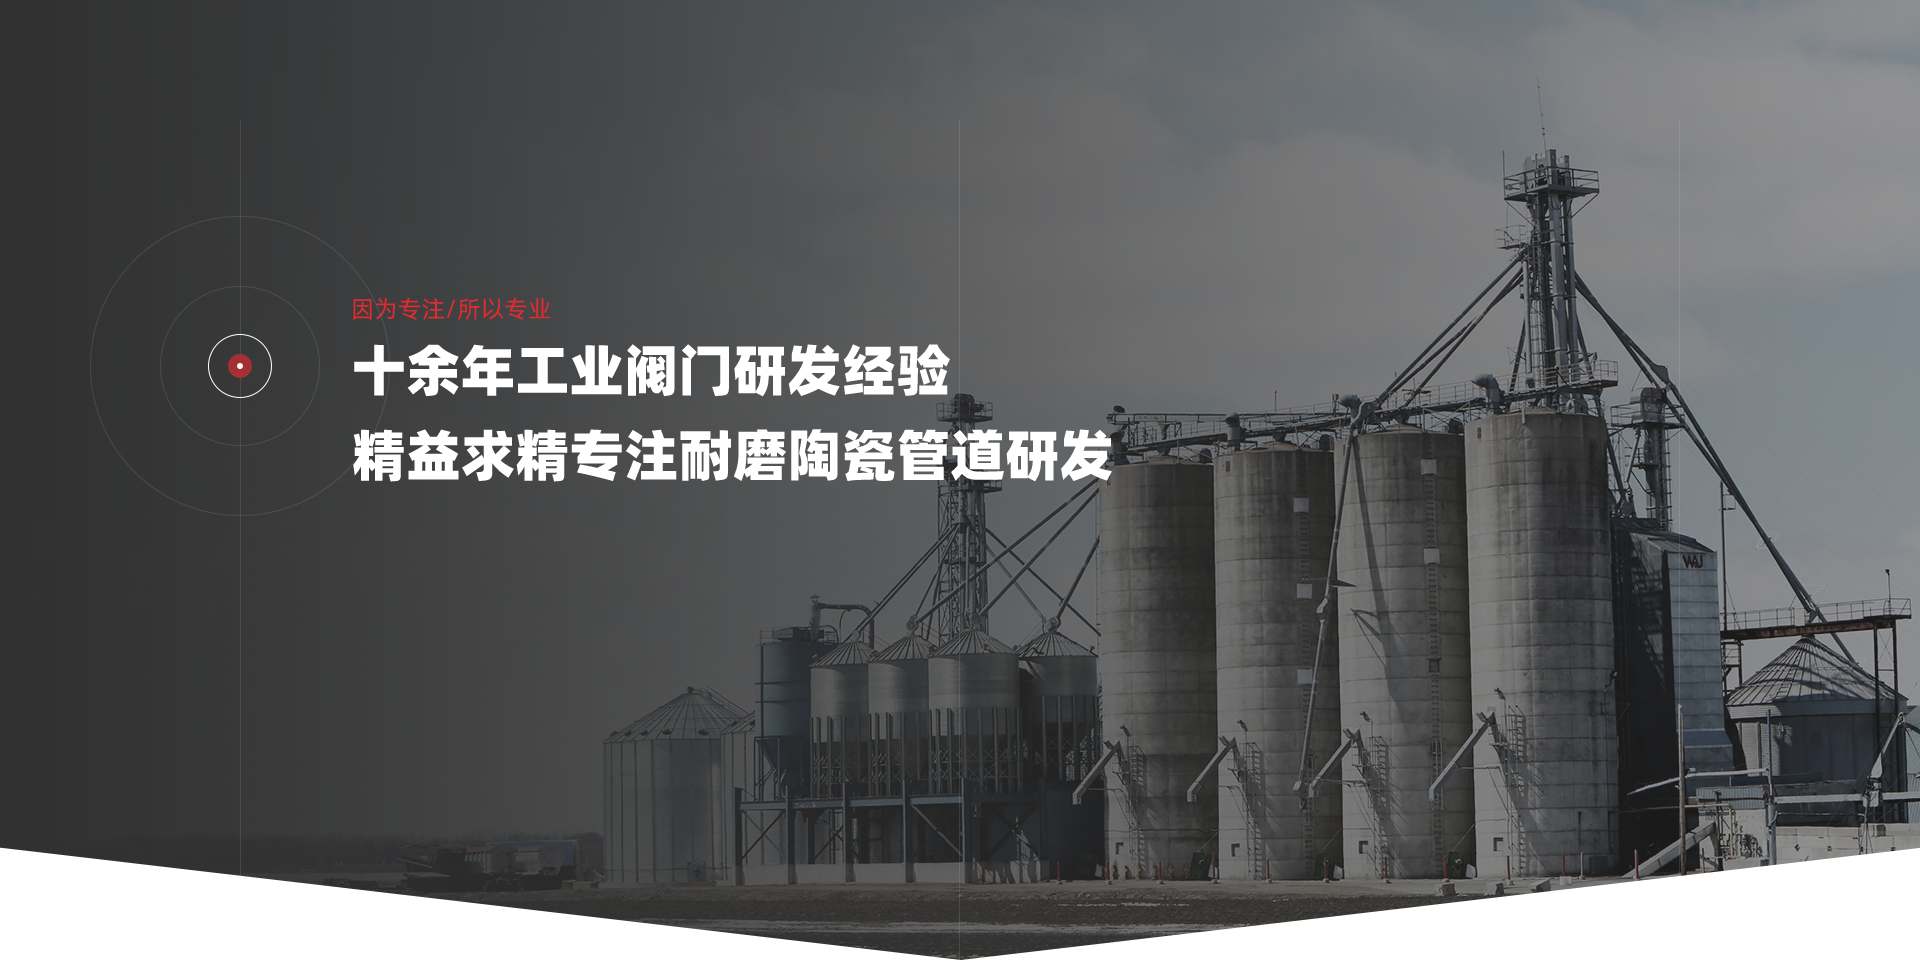 中国二十二冶集团举办第一届“十佳青年岗位标兵”和“青年岗位能手”评选活动 - 中国二十二冶集团有限公司